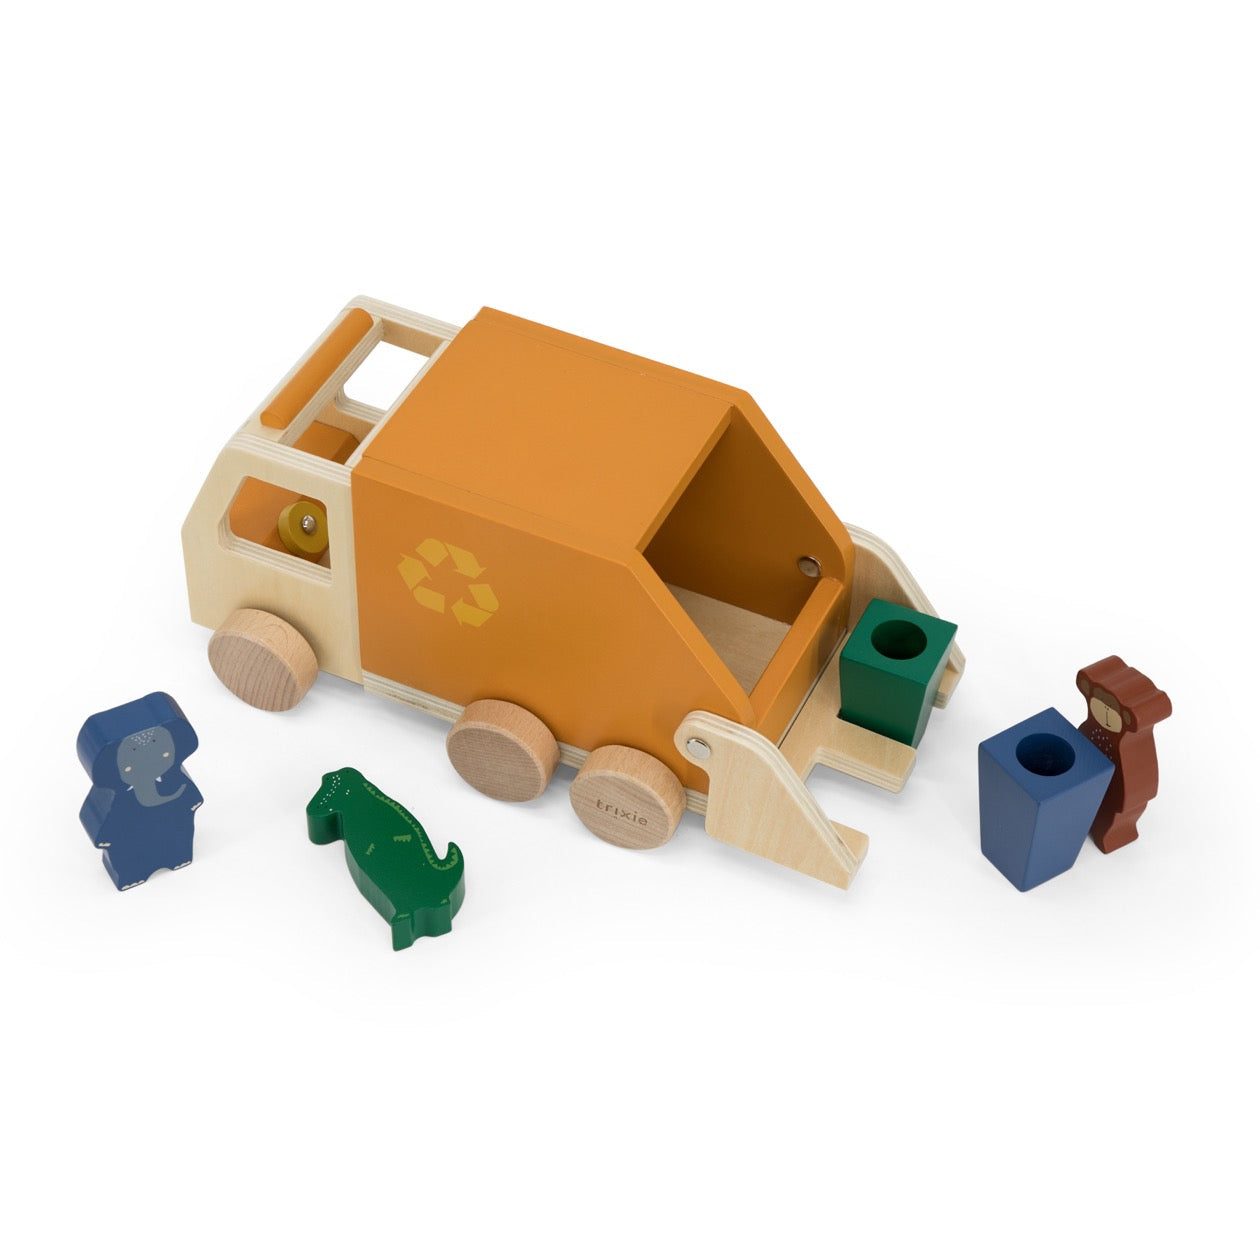 Trixie Süße Holz Müllwagen mit Tieren für umweltfreundliches Spielzeugspaß! 🌿🐶🌍